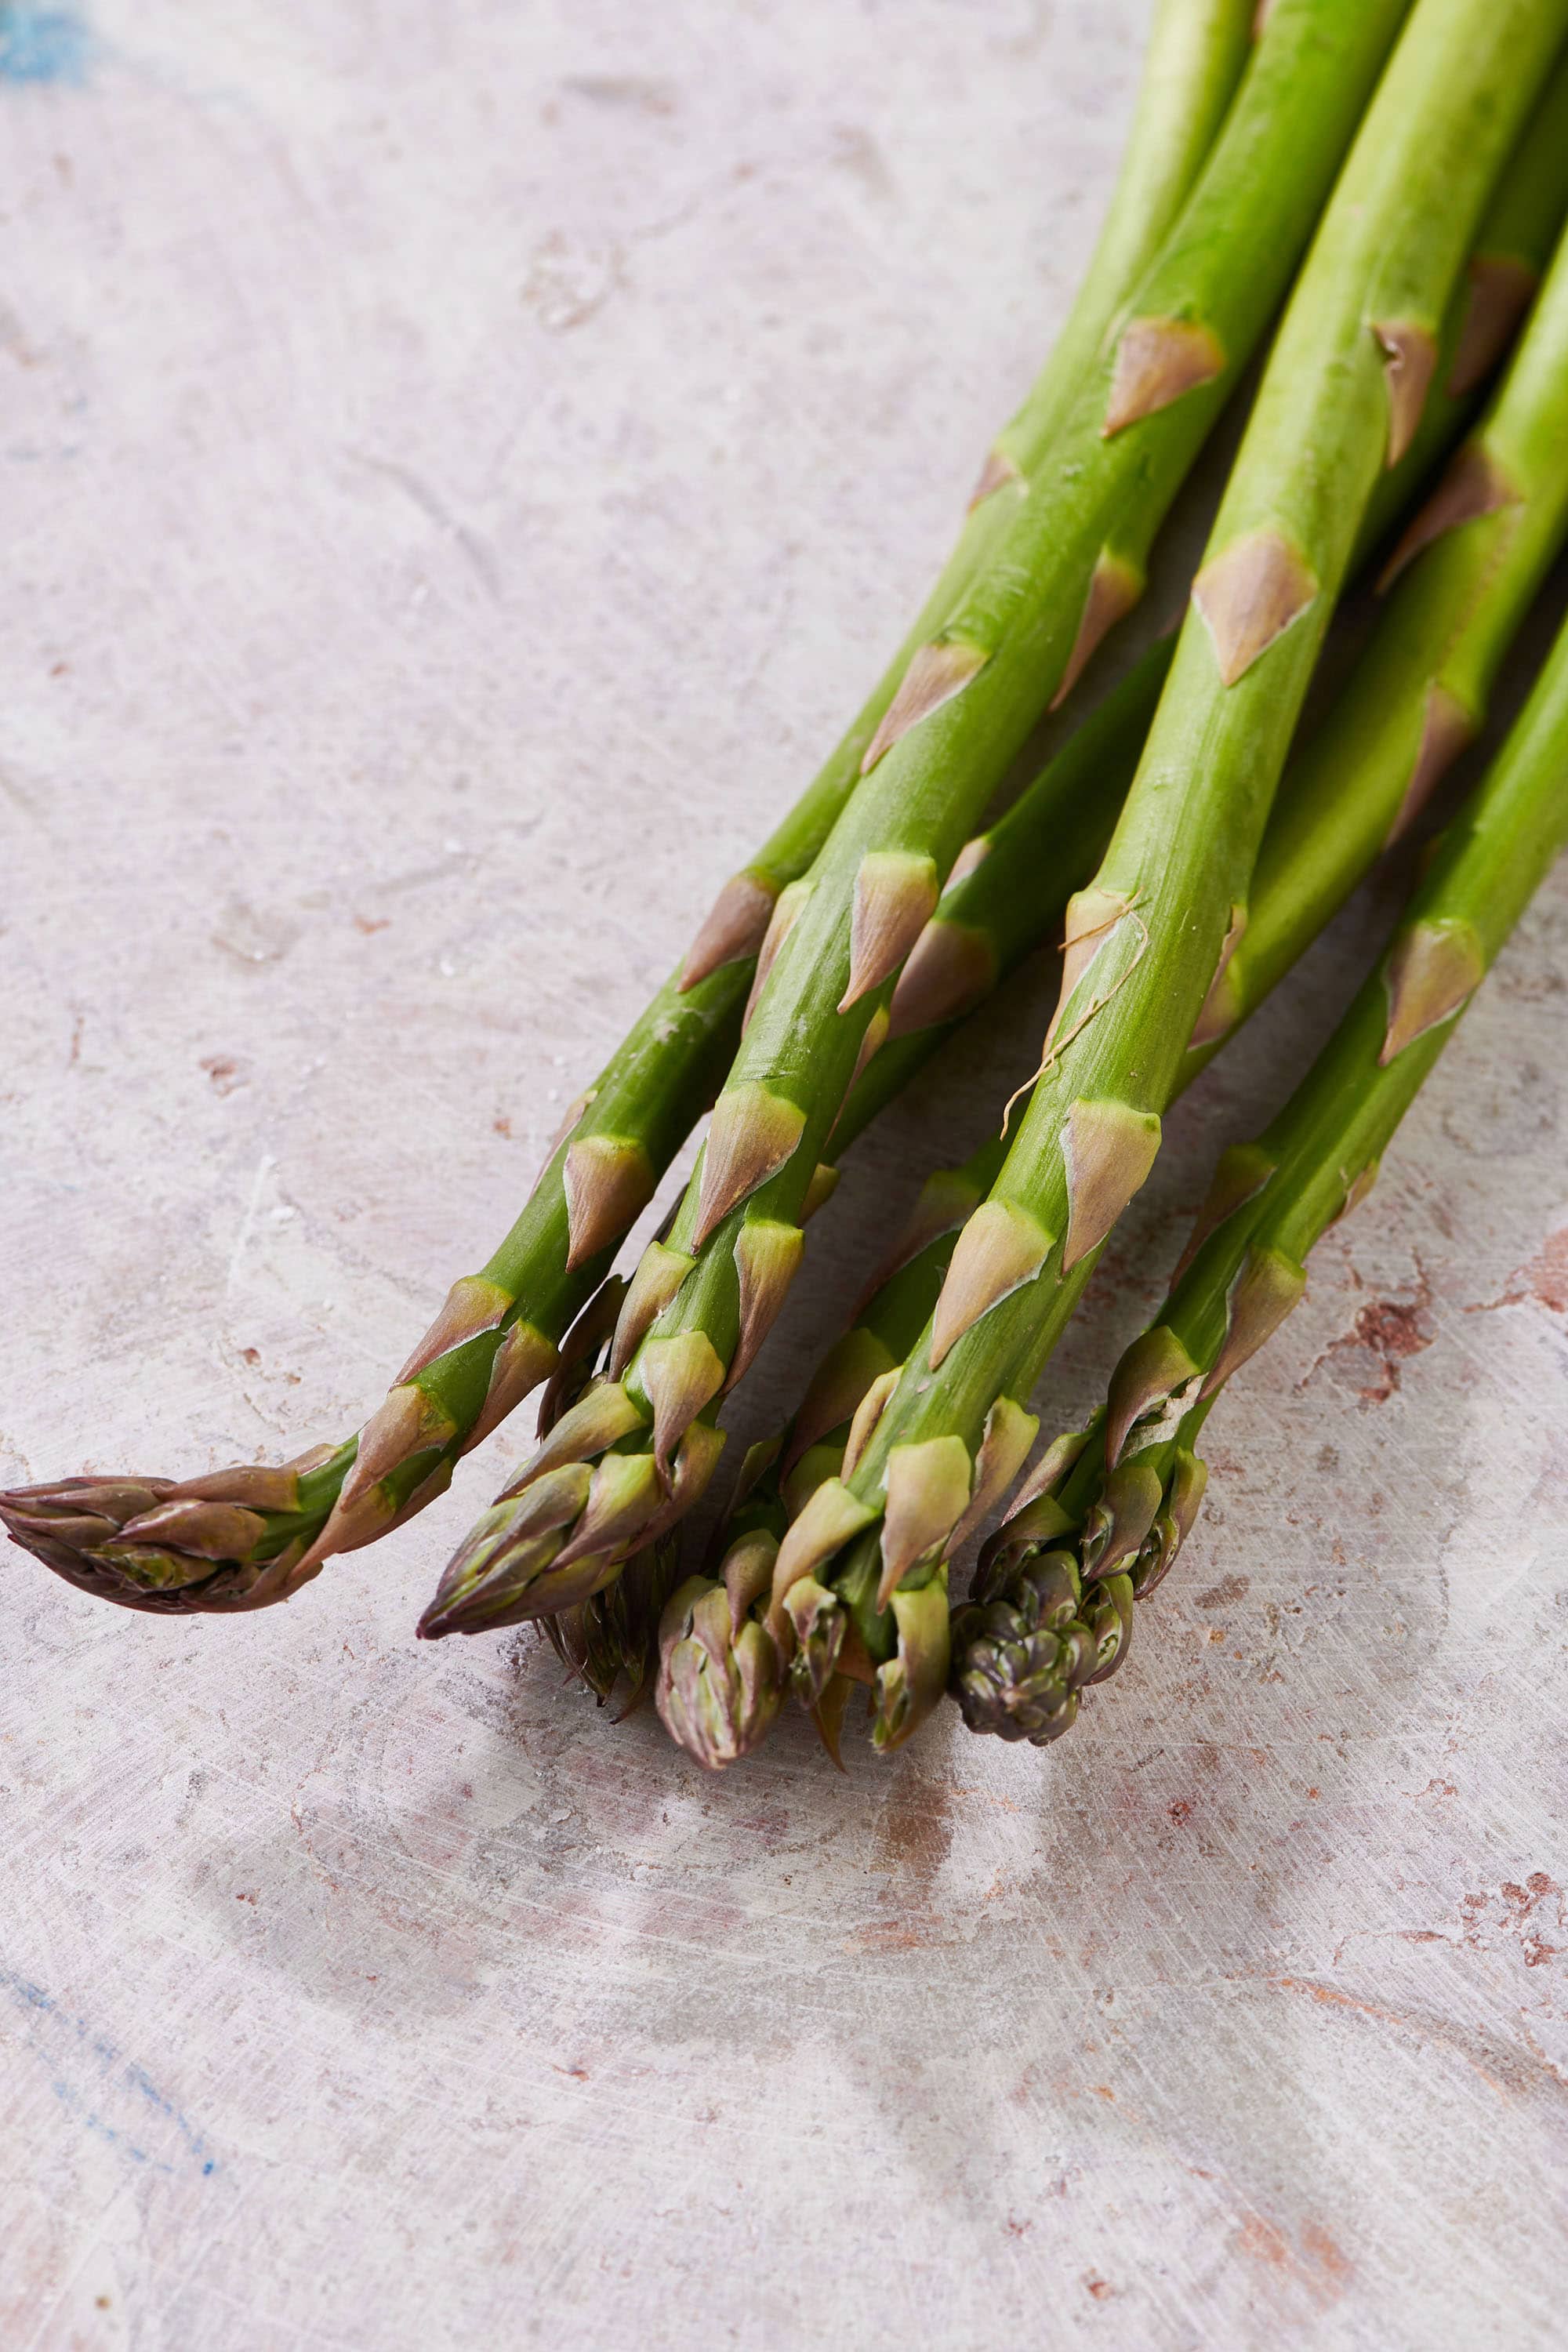 Fresh asparagus spears on table.